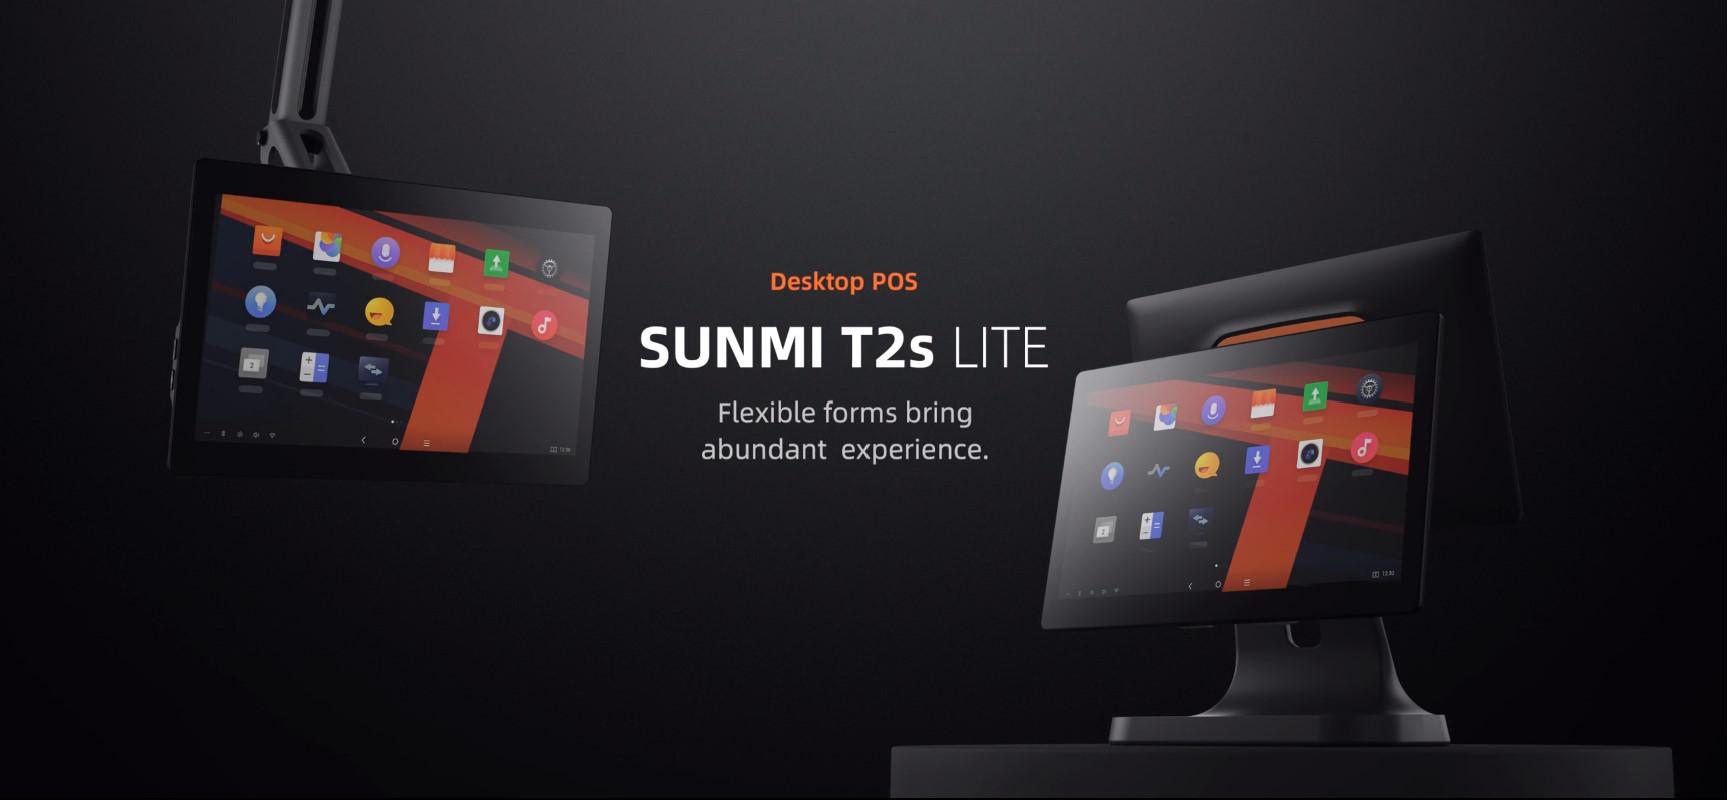 SUNMI DESKTOP POS SYSTEM L1573 T2s LITE EN (15.6" + 15.6", 4GB + 64GB, WiFi, EU Adapter)